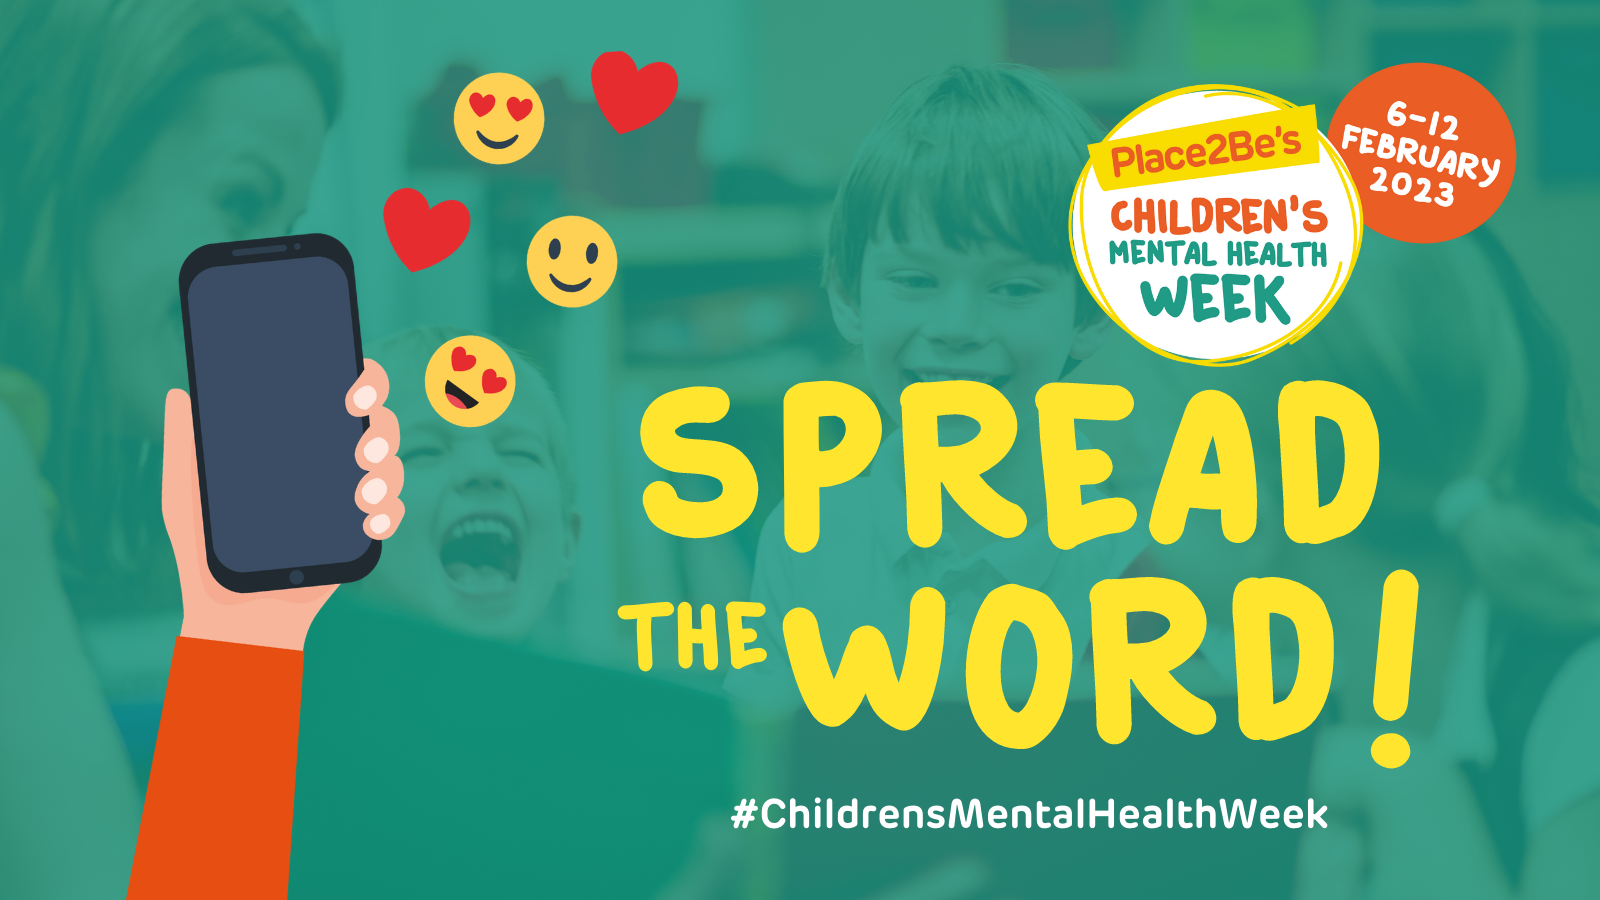 Children’s Mental Health Week